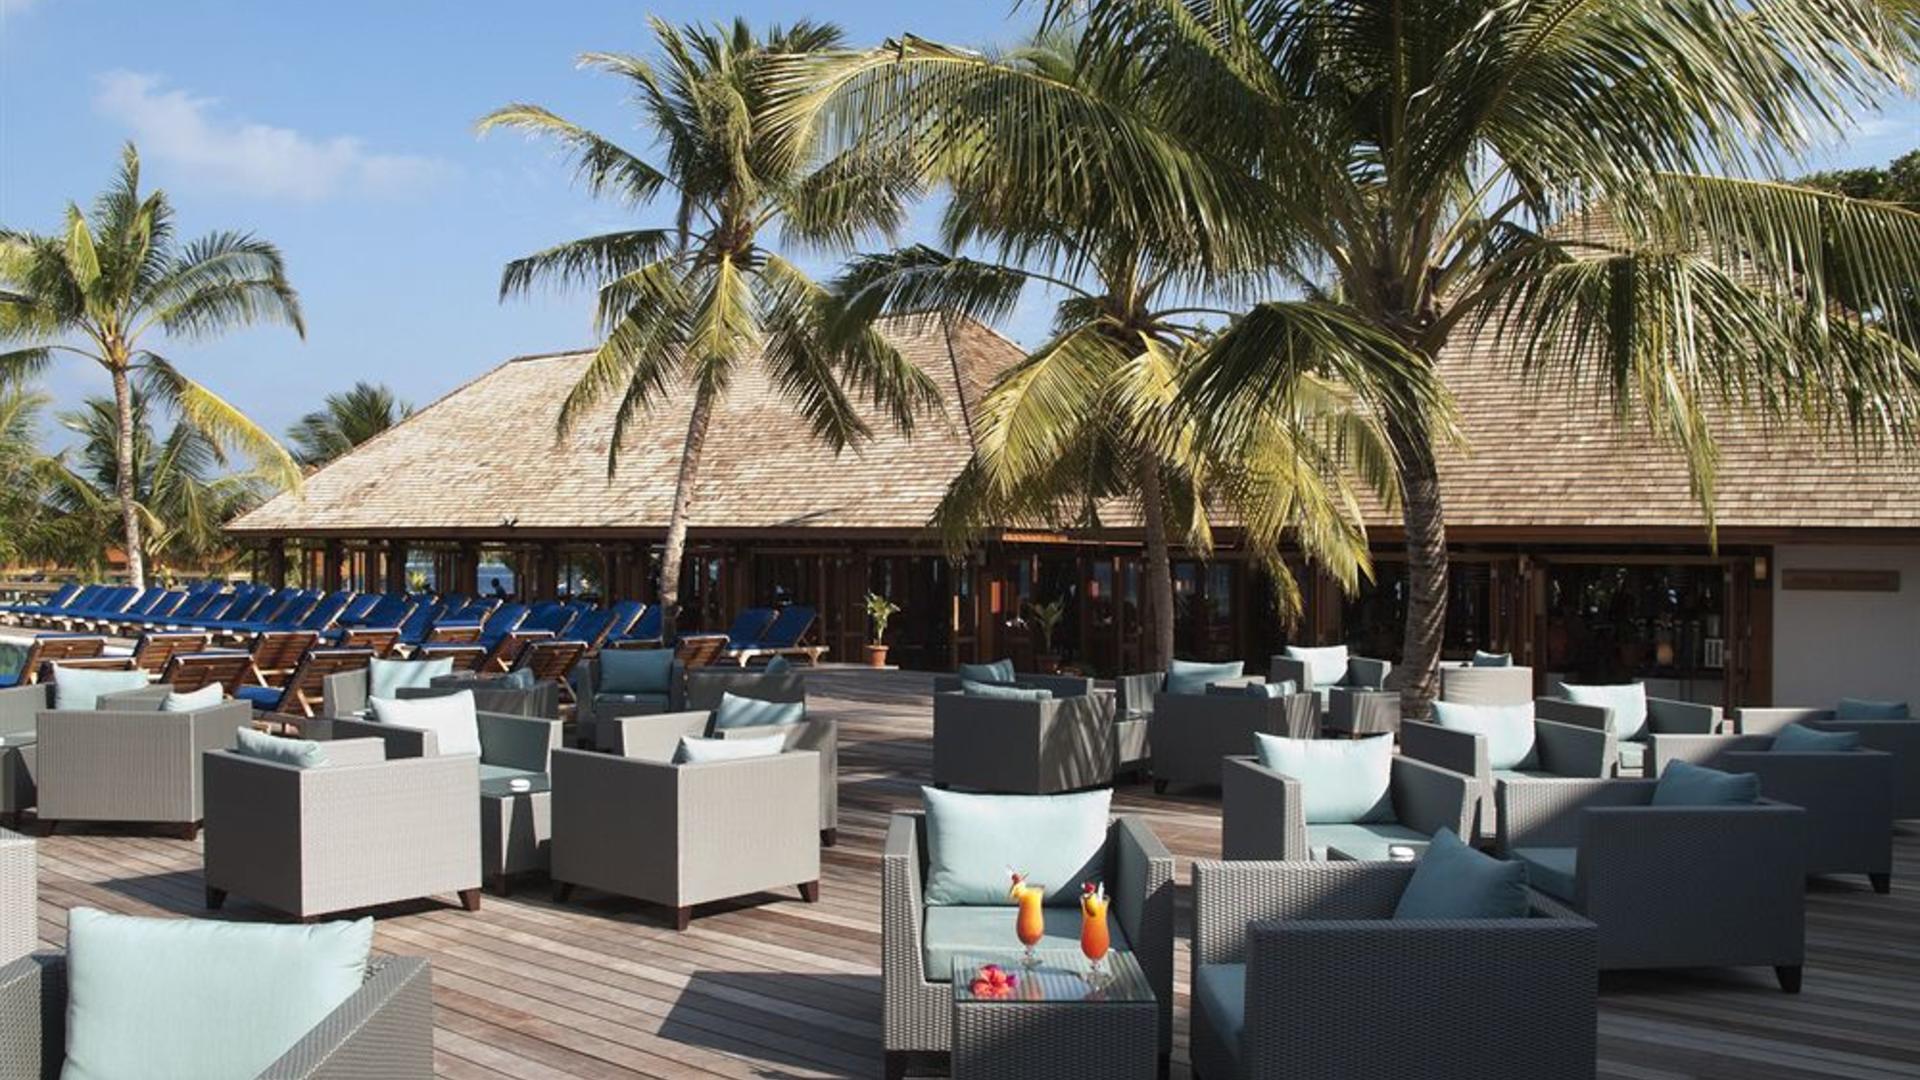 Vilamendhoo island resort. Vilamendhoo Island Resort & Spa 4*. Виламендху Айленд Мальдивы. Виламенду отель Мальдивы. Vilamendhoo 4 Мальдивы.